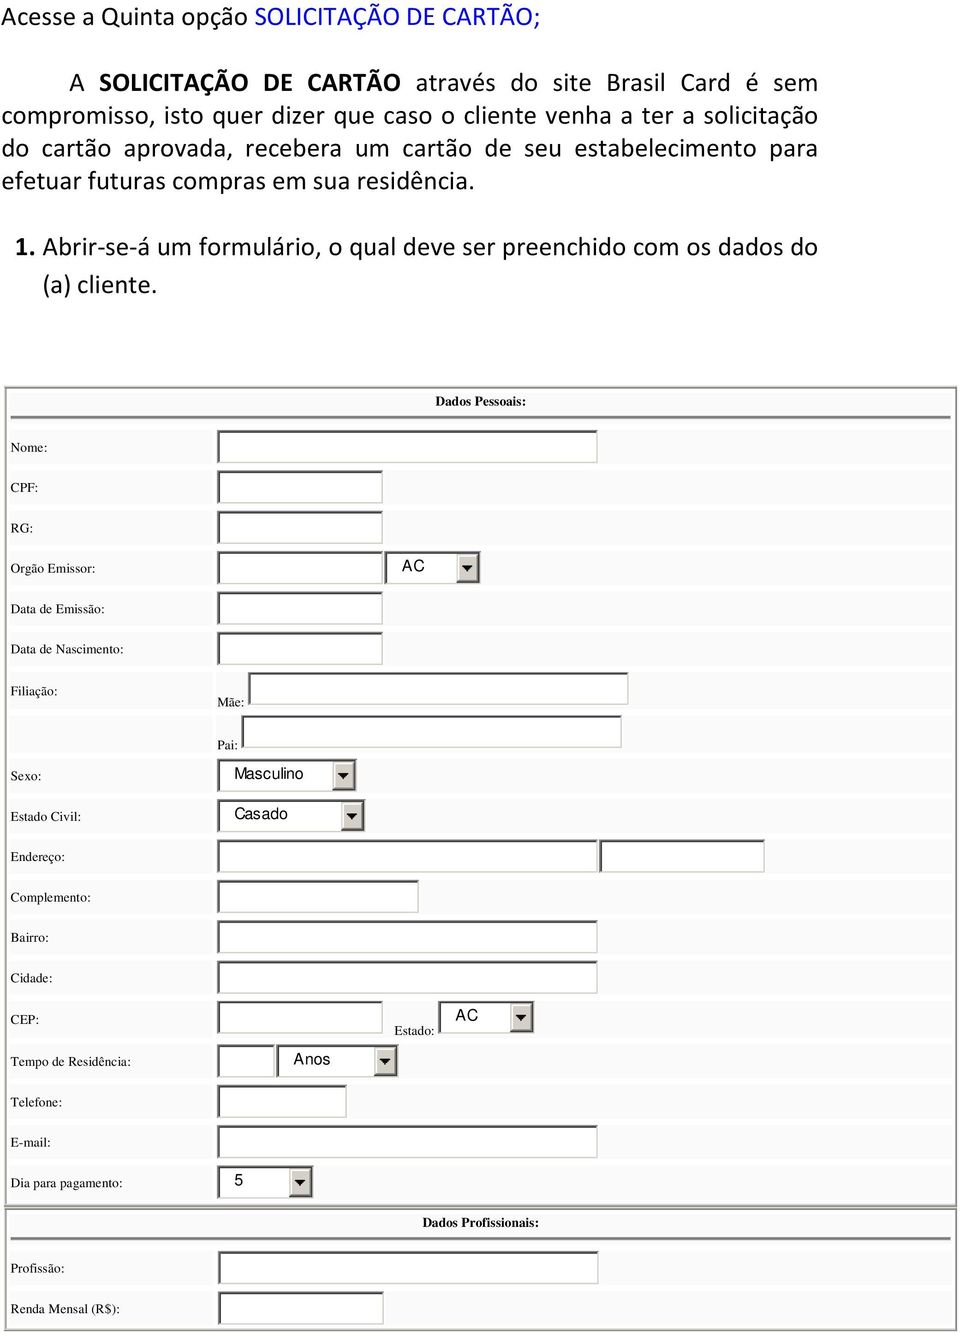 Abrir-se-á um formulário, o qual deve ser preenchido com os dados do (a) cliente.